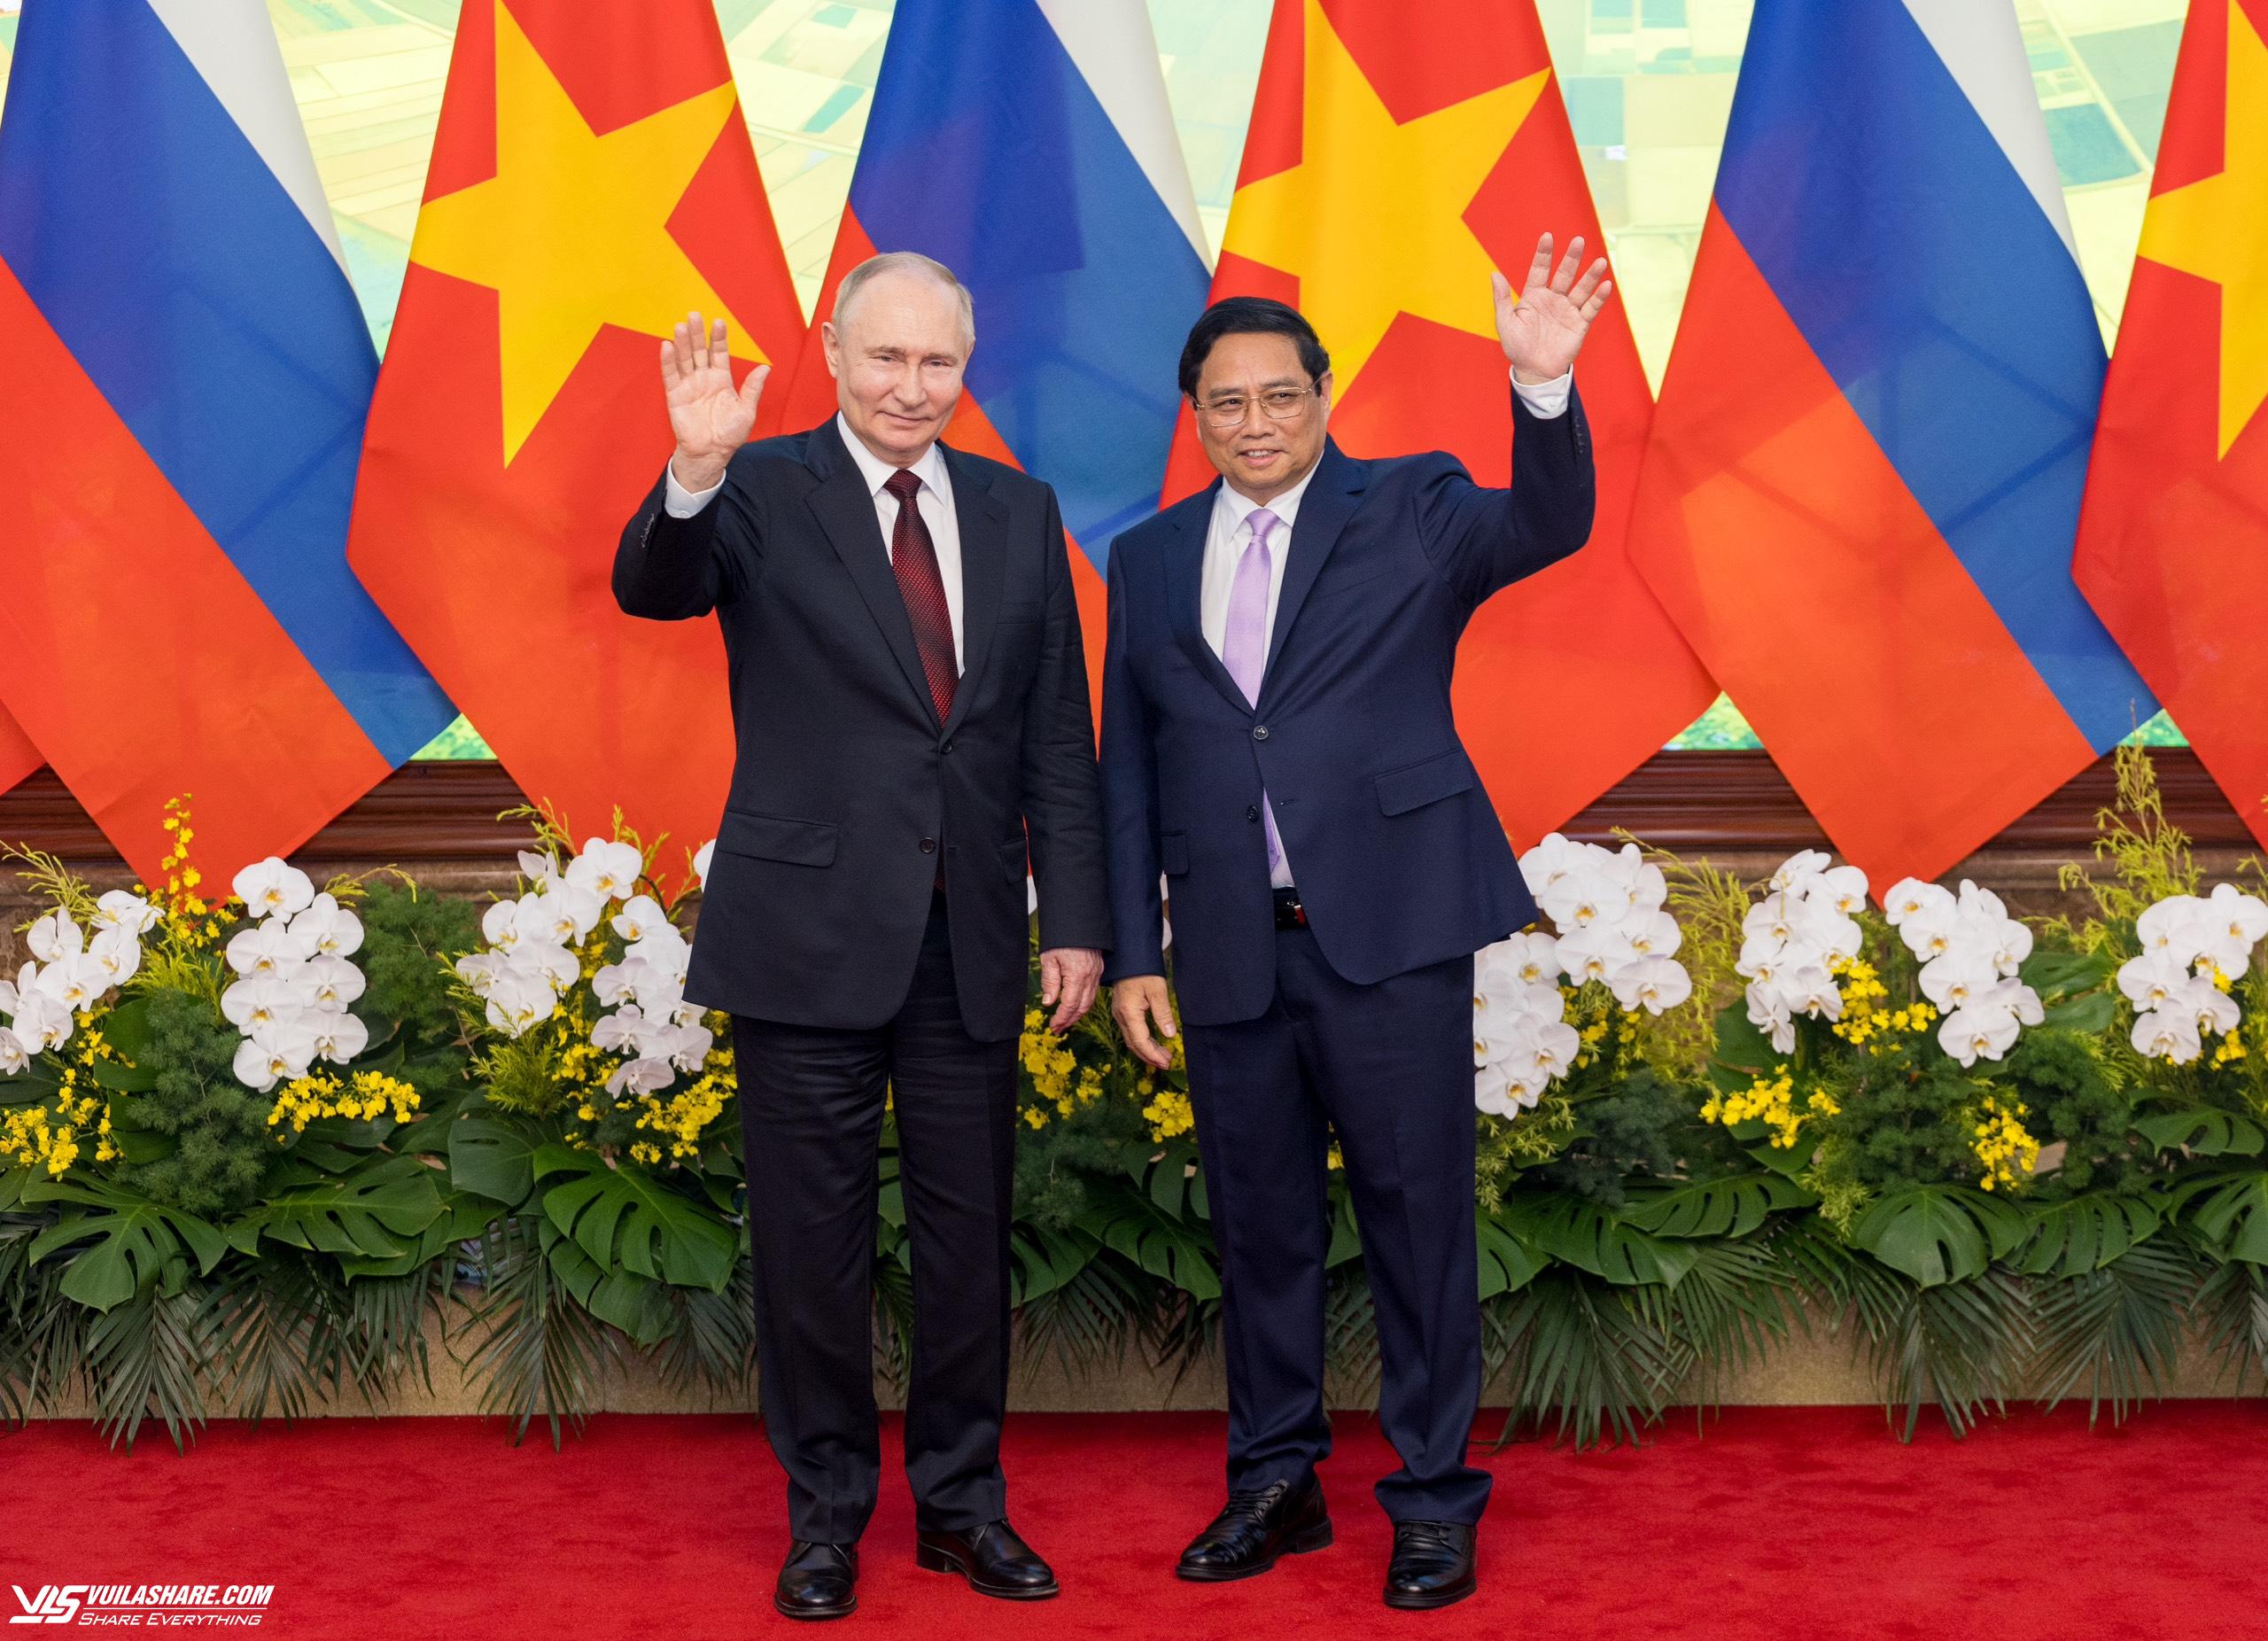 Chuyến thăm của Tổng thống Putin đã tạo xung lực mới cho quan hệ Việt - Nga- Ảnh 3.